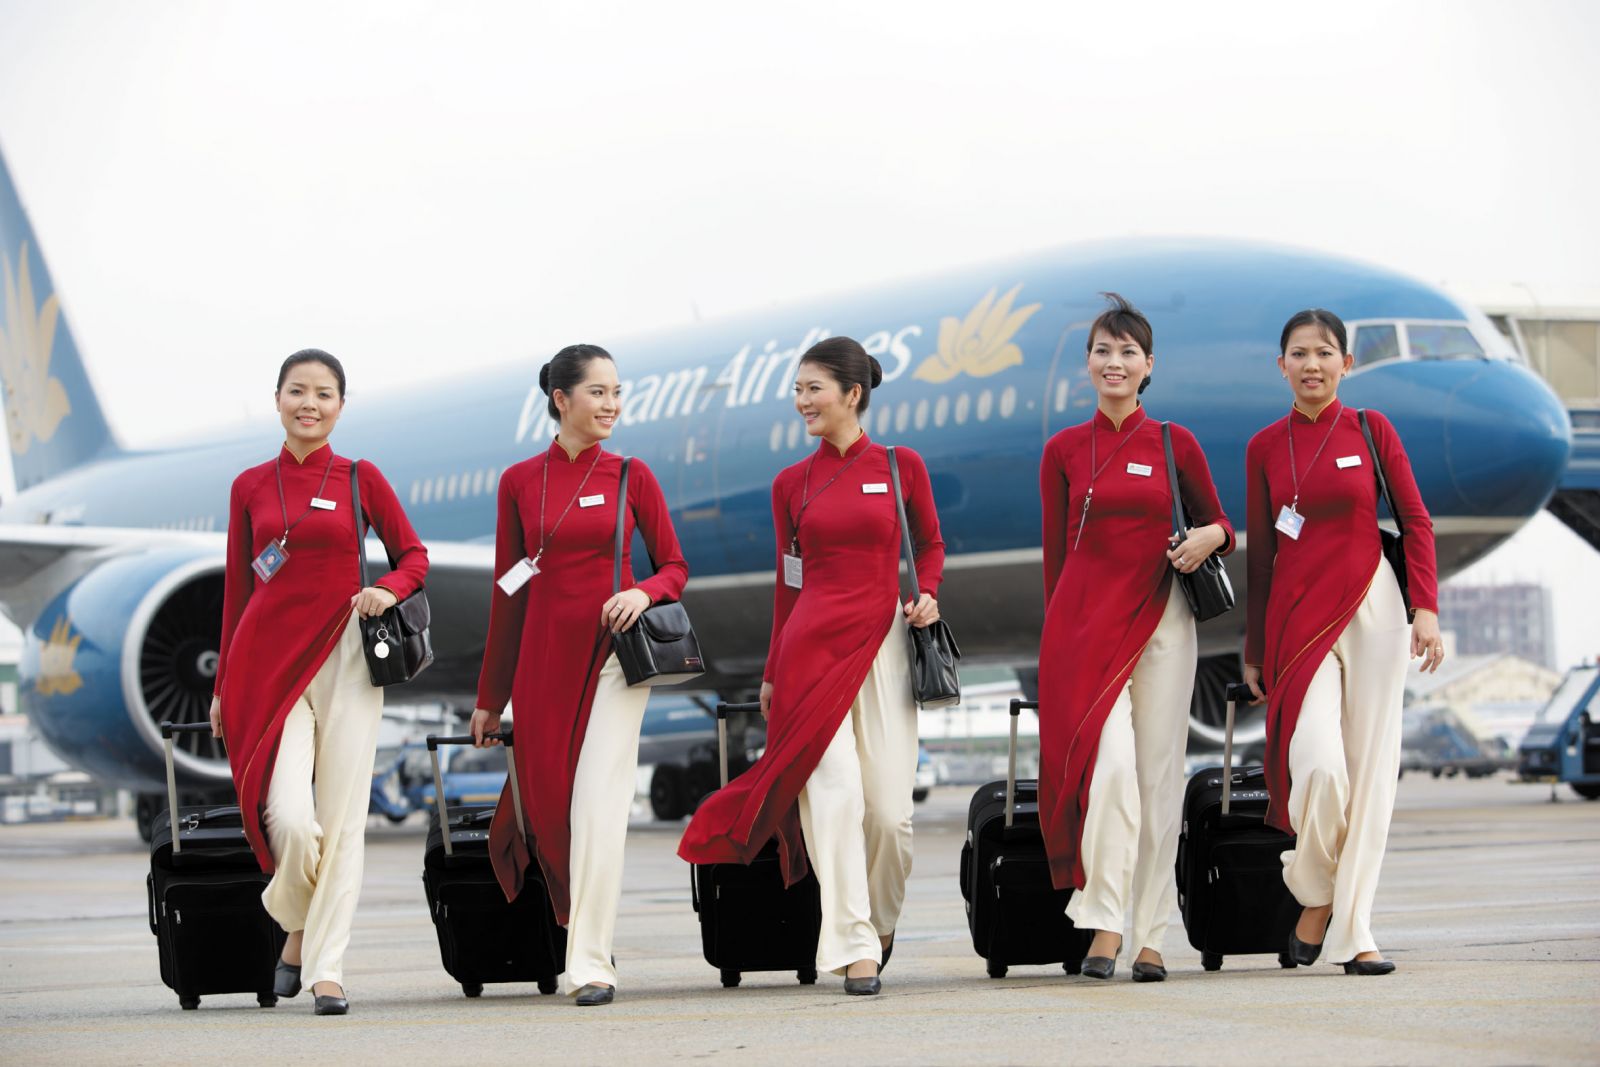 Tiêu chuẩn làm tiếp viên hàng không của Vietnam Airlines, Vietjet Air,...